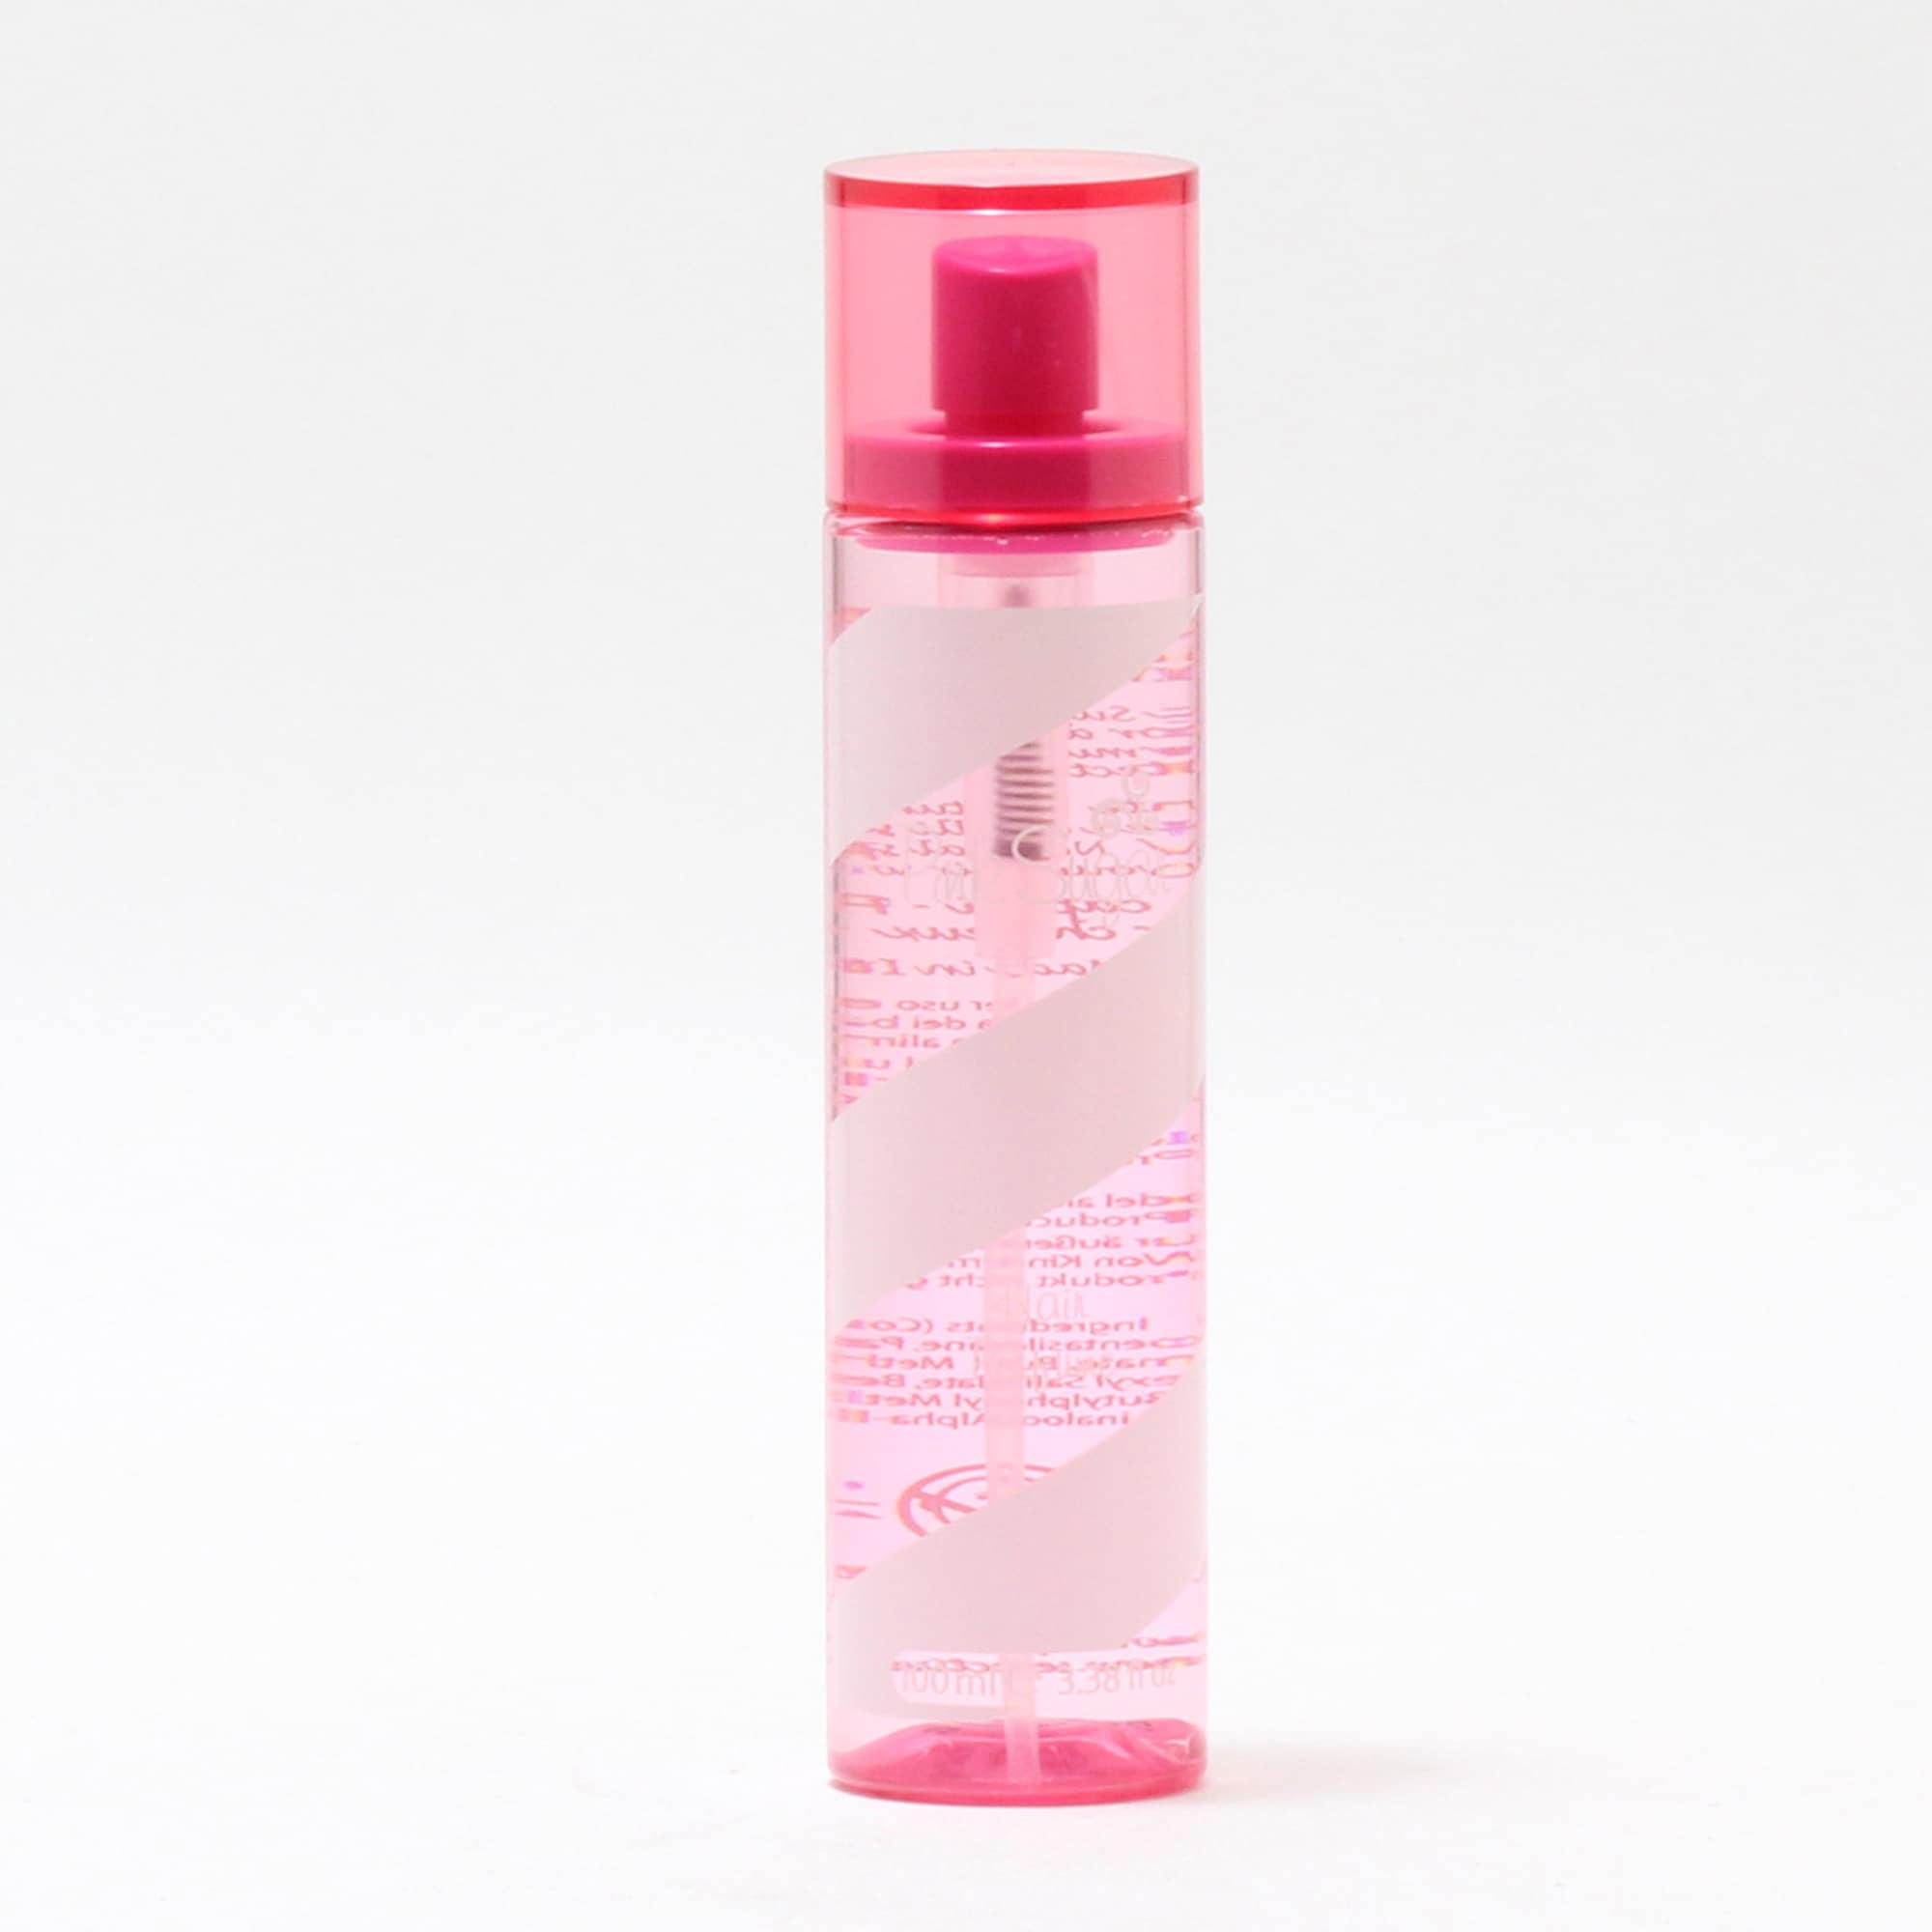 Aquolina - Pink Sugar by Hair Perfume 3.4 oz